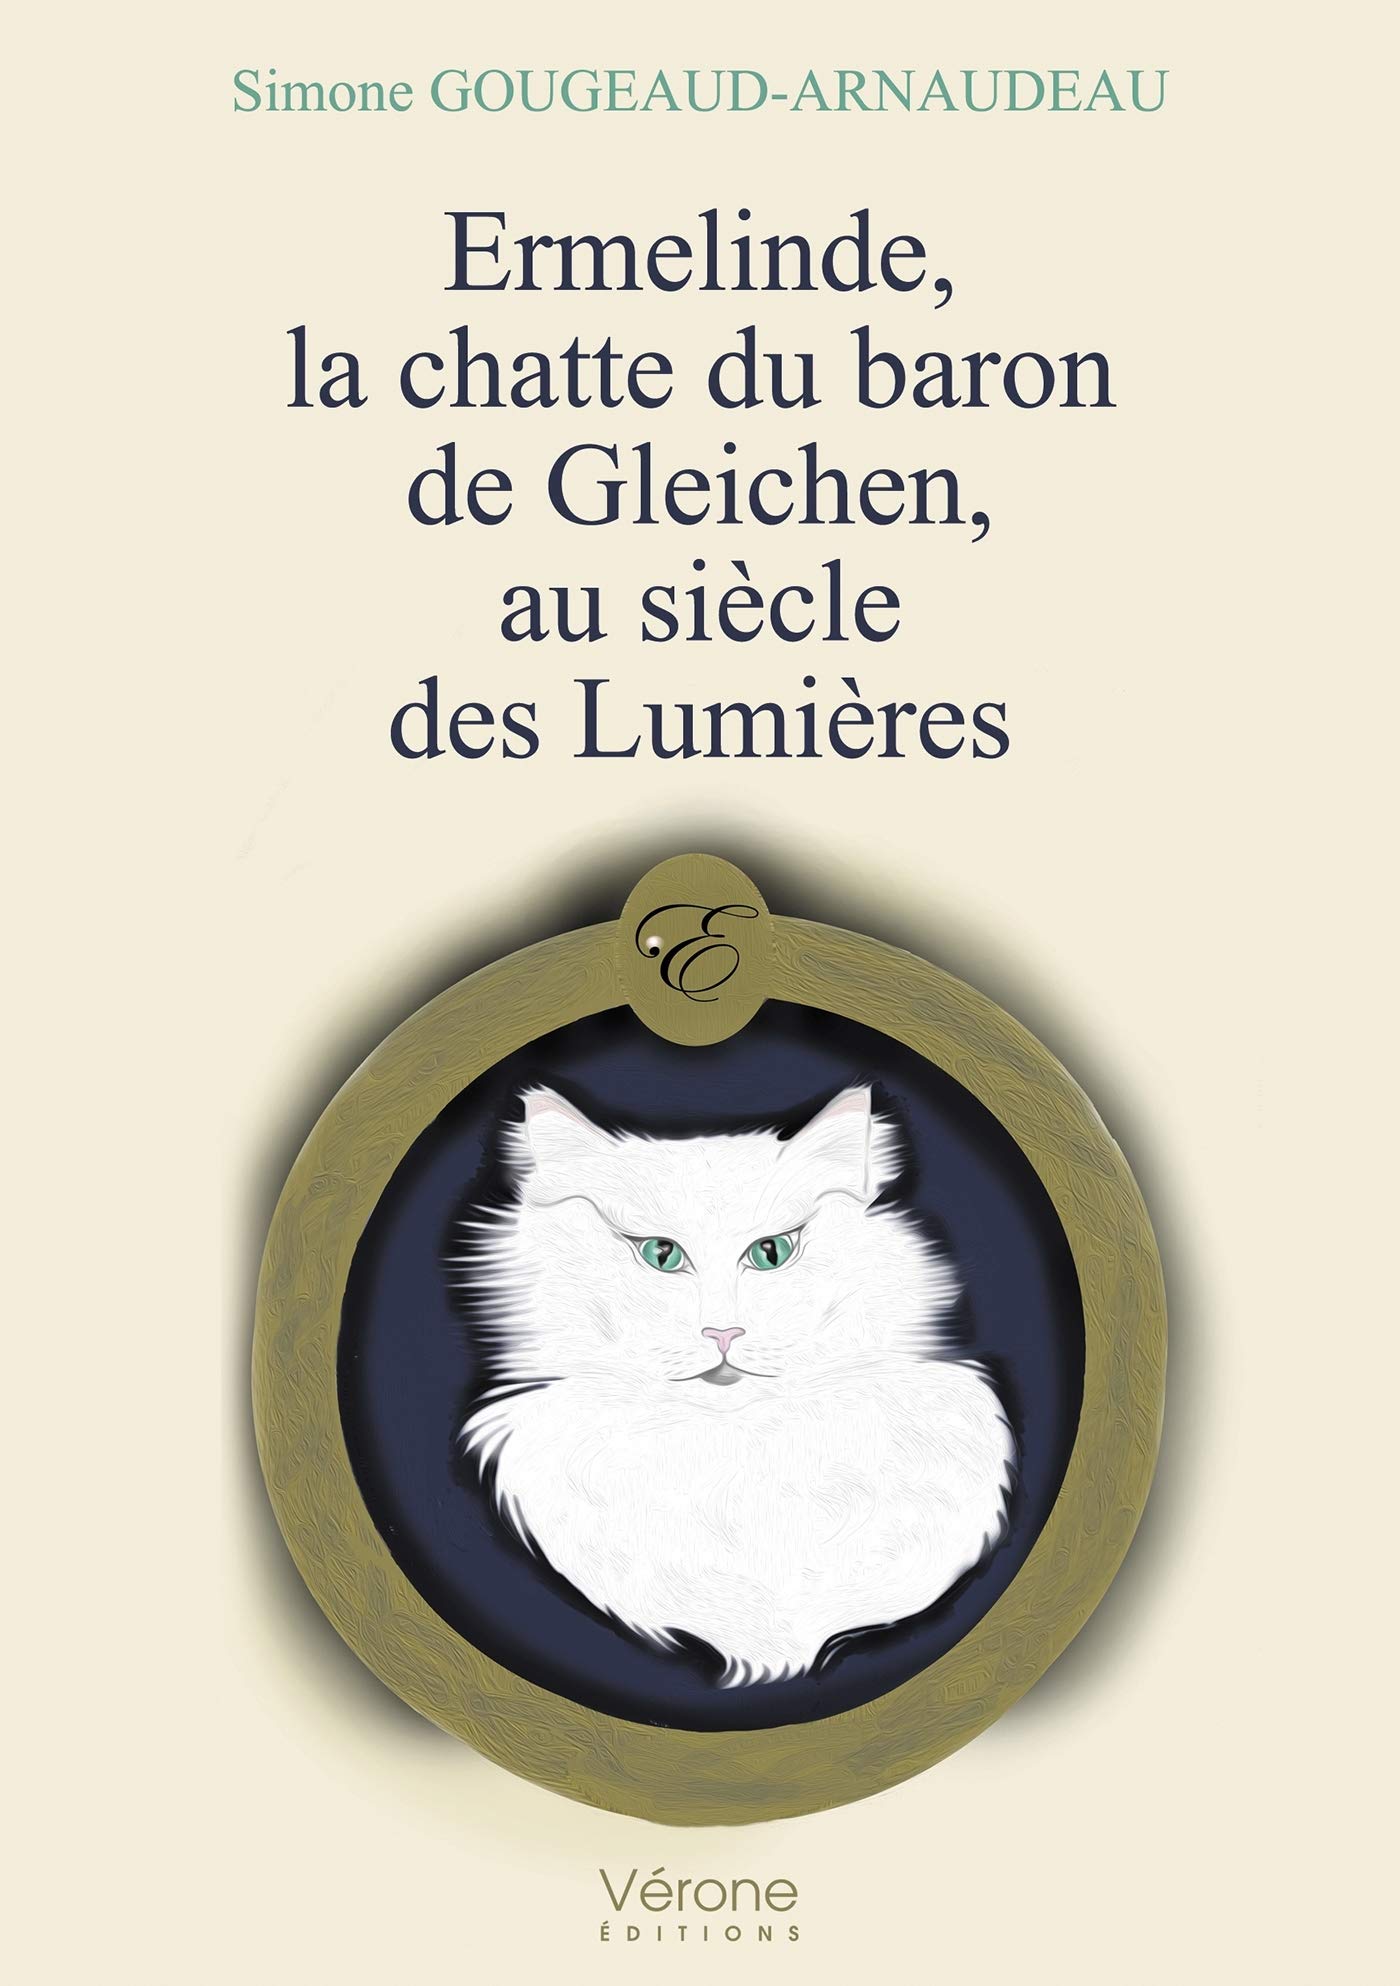 Ermelinde, la chatte du baron de Gleichen, au siècle des Lumières